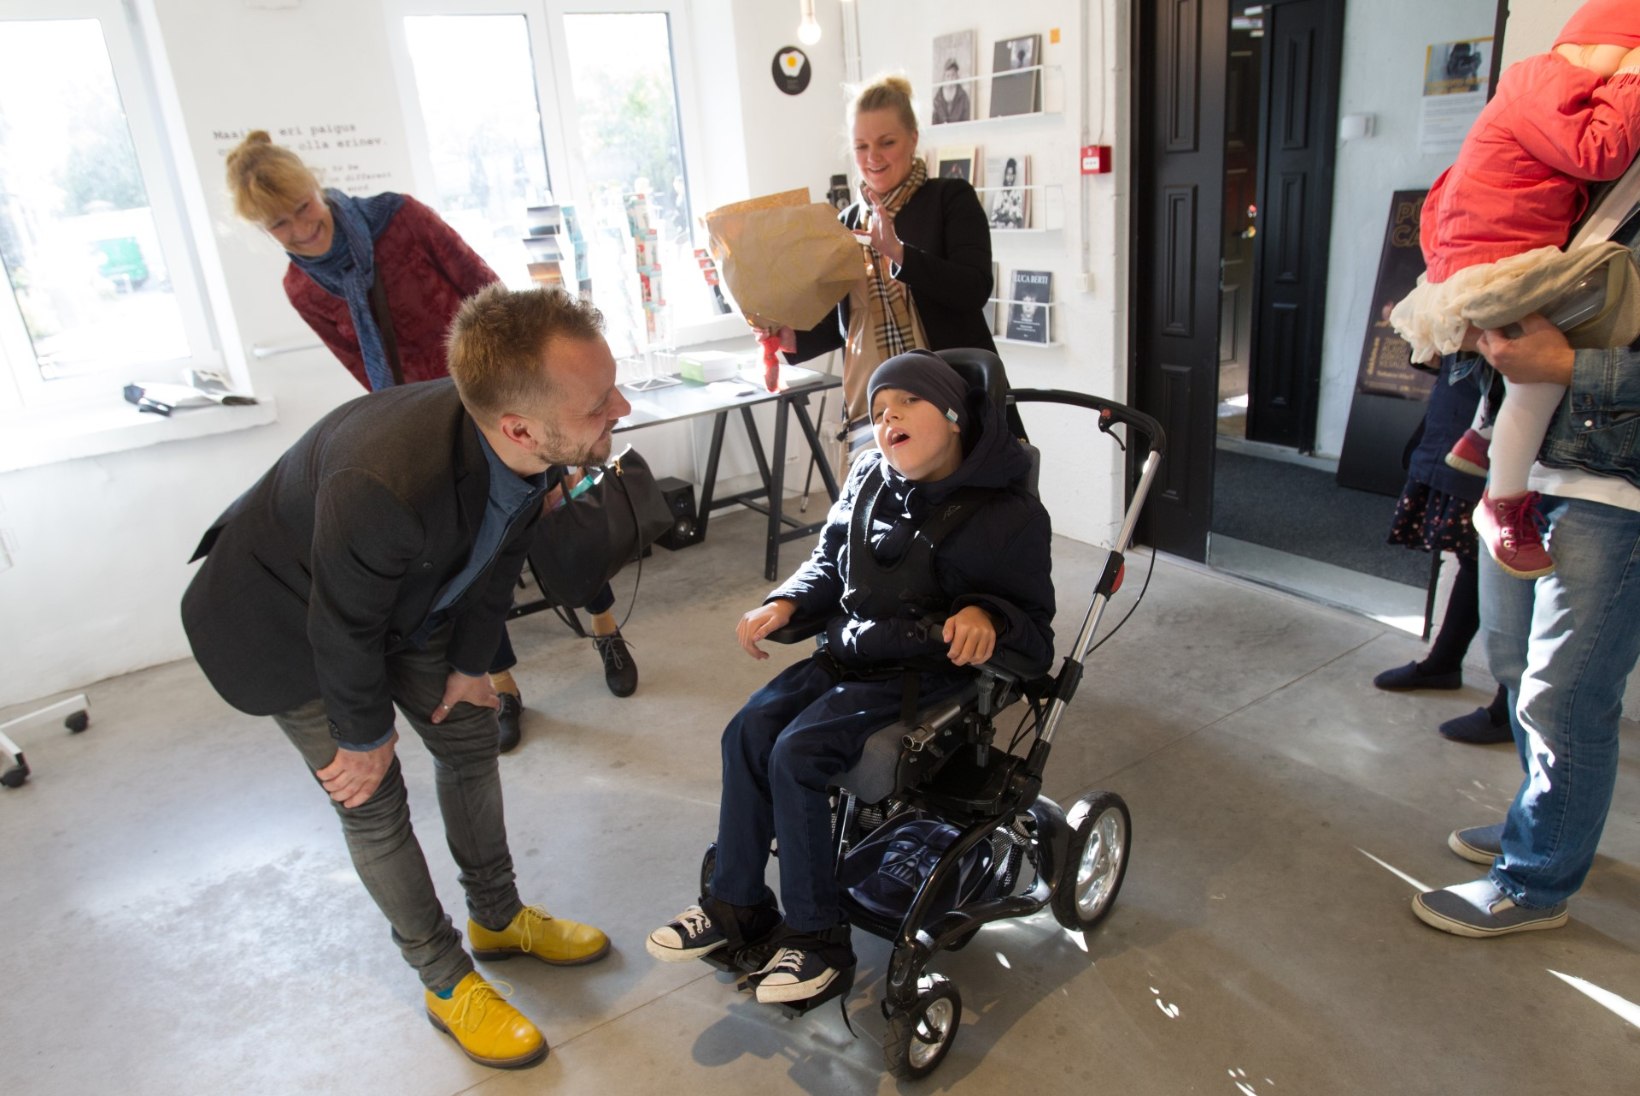 GALERII | Dokfoto keskuses avati näitus puuetega laste kodusest elust